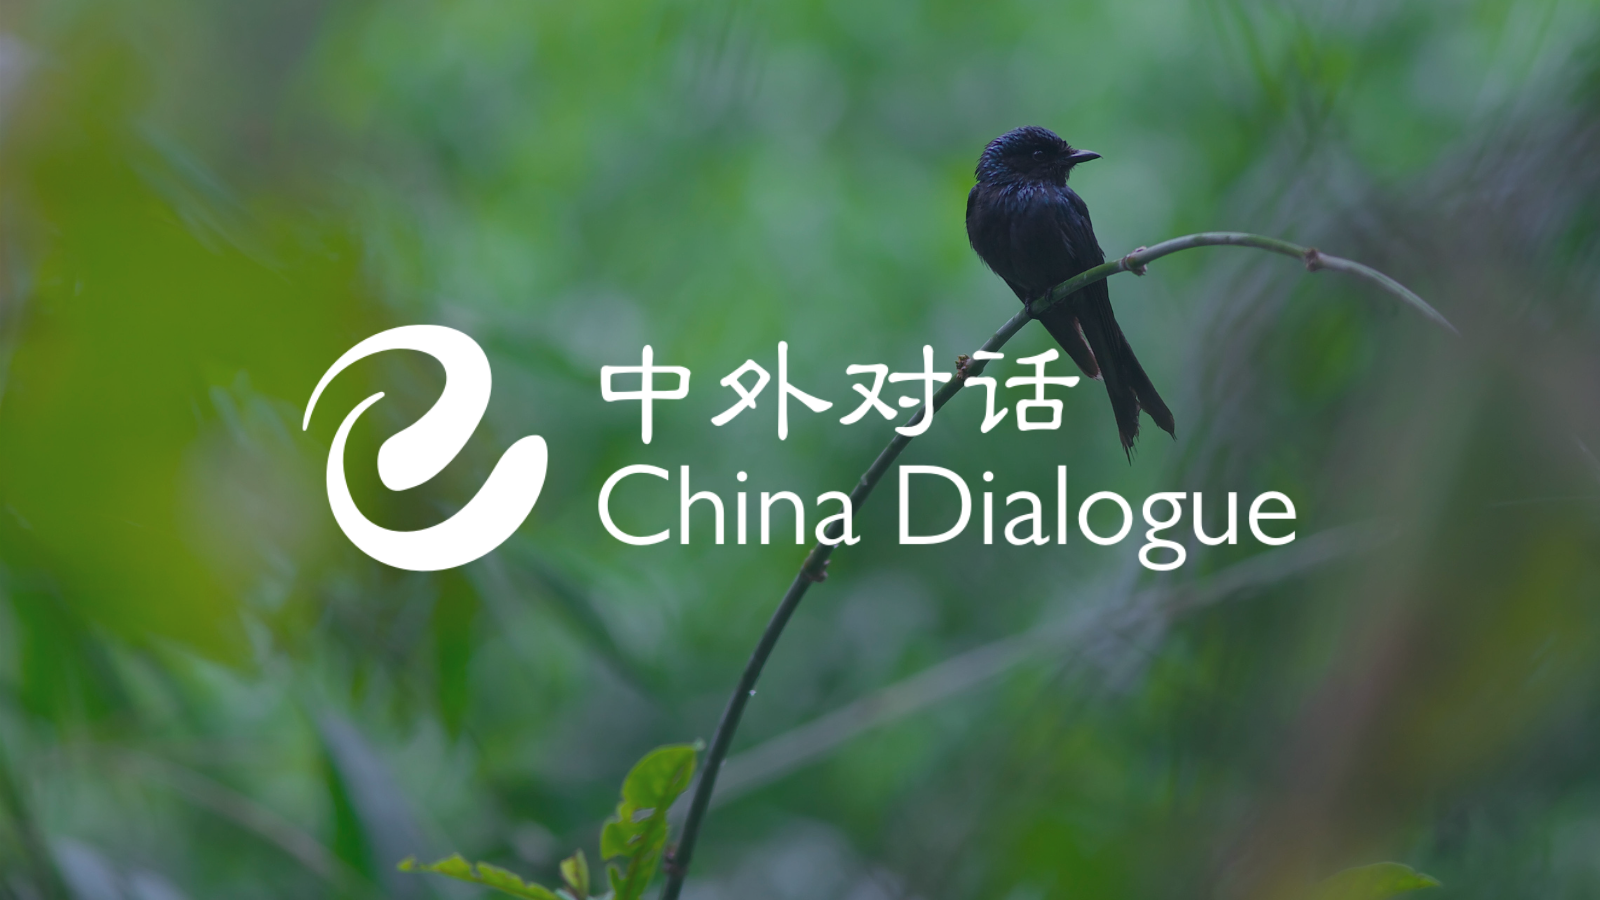 Với nhiều quan ngại về tình hình môi trường tại Trung Quốc, xem hình ảnh liên quan đến môi trường tại Trung Quốc sẽ giúp bạn có cái nhìn tổng quan về những tác động đến môi trường trong quốc gia này và các nỗ lực đang được thực hiện để bảo vệ môi trường.